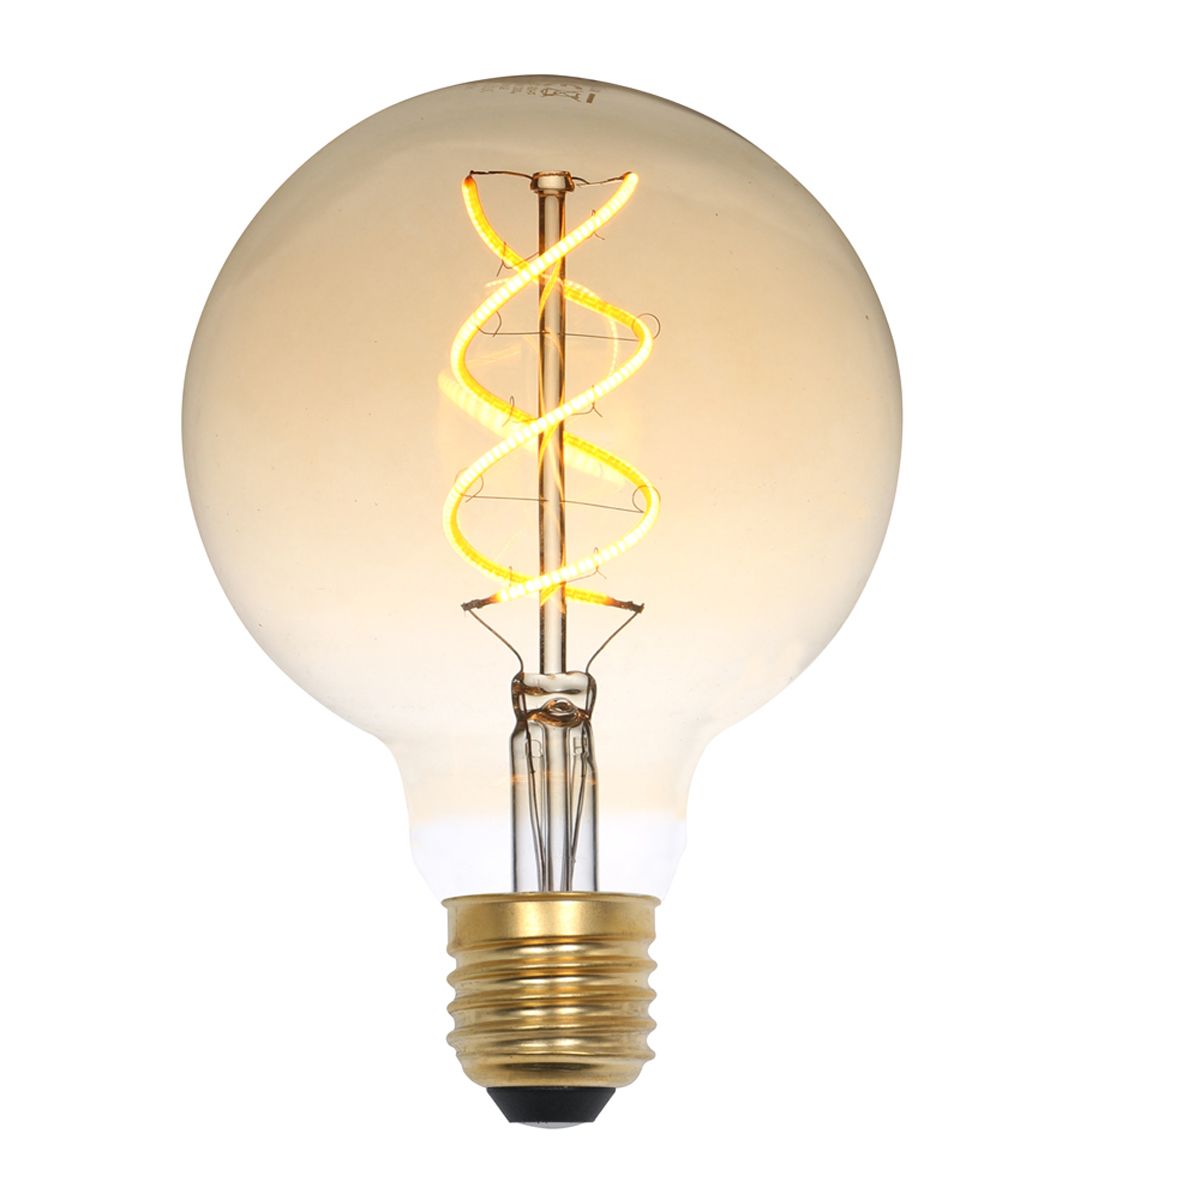 Ampoule LED industrielle ronde E27 5W 